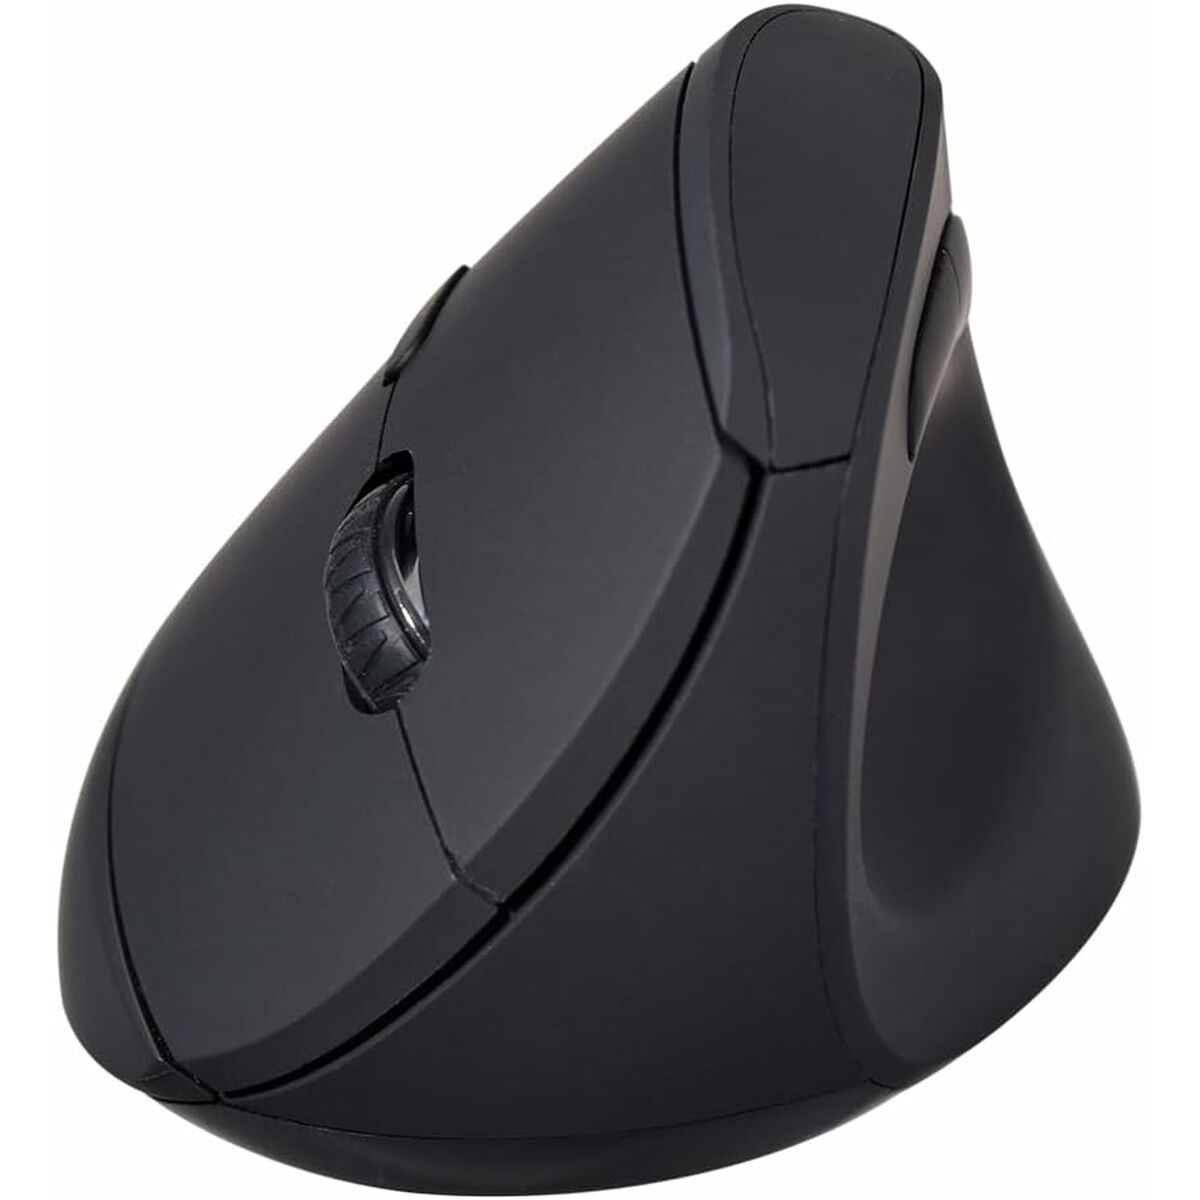 Osta tuote Langaton Bluetooth-hiiri V7 MW500BT Musta 1600 dpi verkkokaupastamme Korhone: Tietokoneet & Elektroniikka 20% alennuksella koodilla VIIKONLOPPU